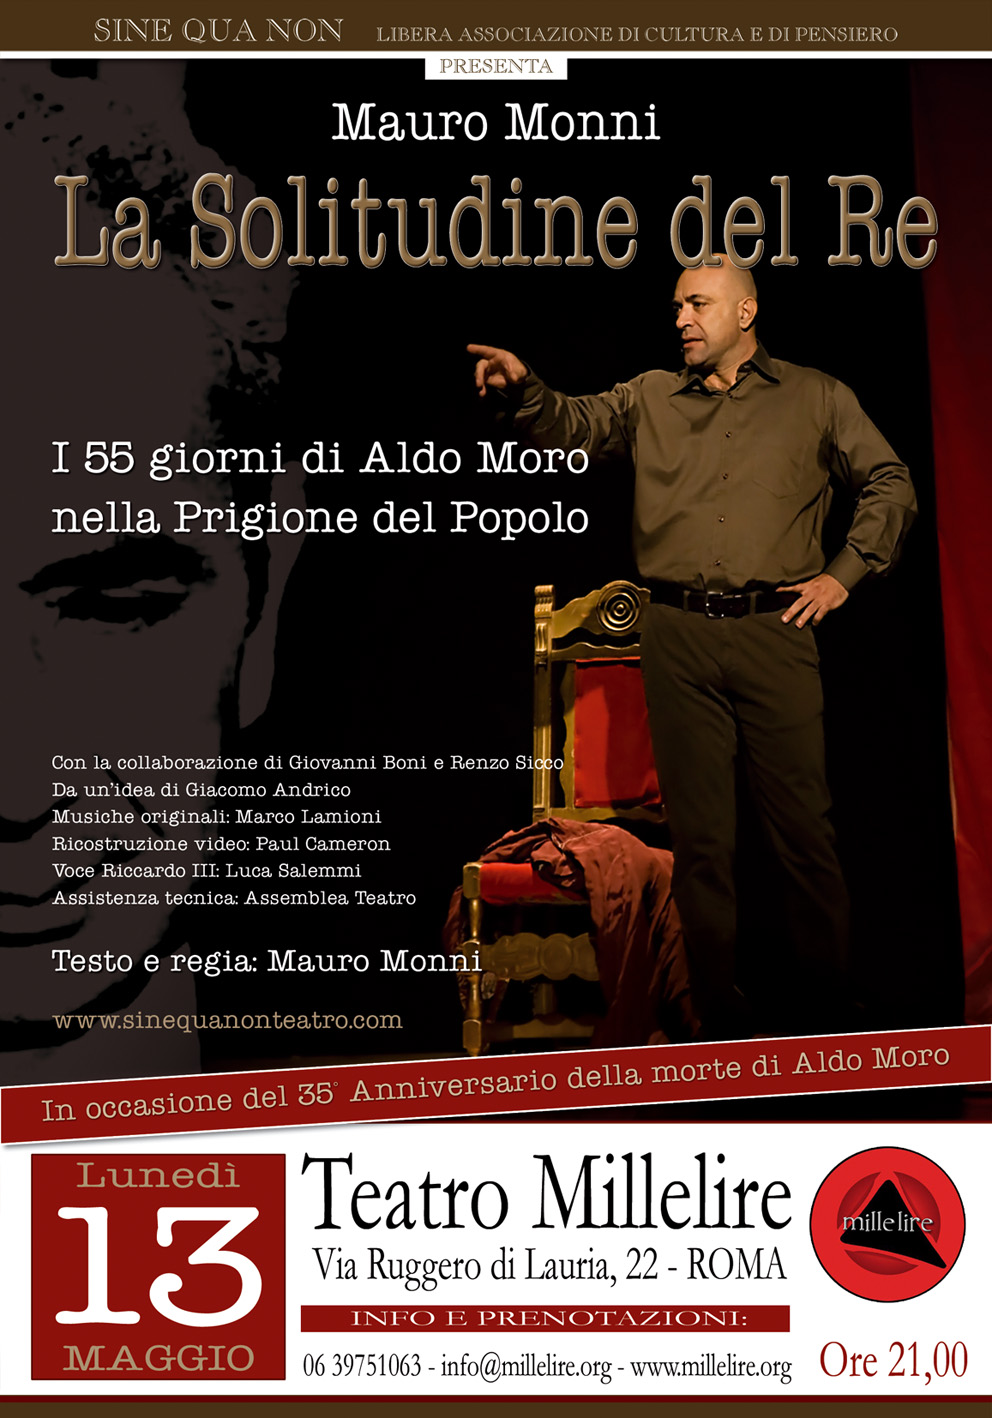 Al teatro Millelire di Roma unica data 13 maggio per "La solitudine del re", i 55 giorni di prigionia di Aldo Moro